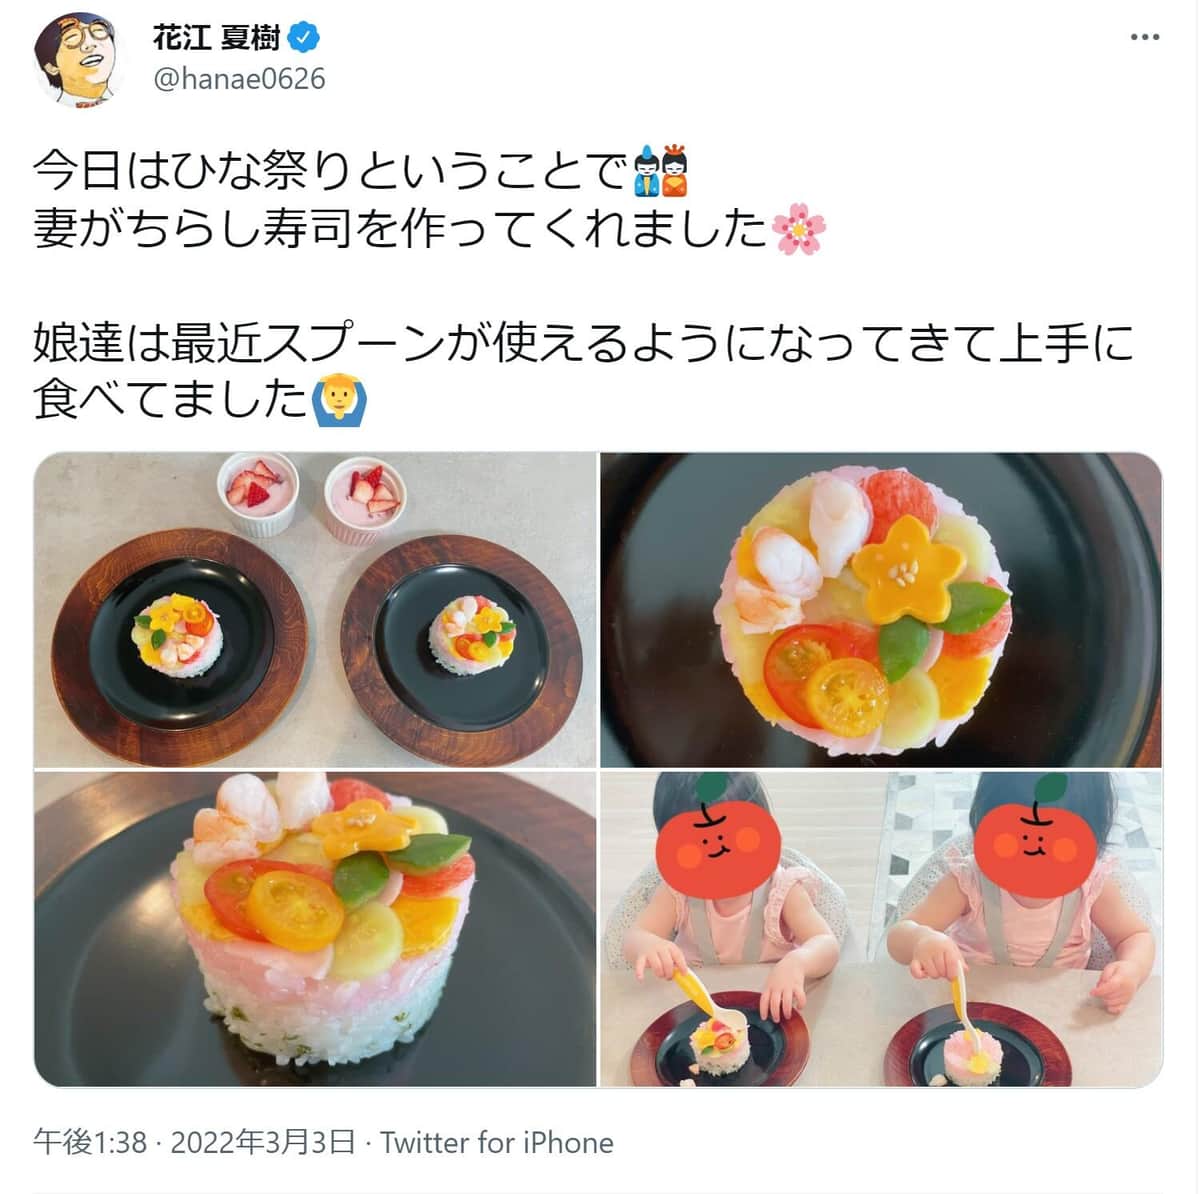 「ひな祭り」ちらし寿司＆双子姉妹に癒される人続出　花江夏樹、妻の手料理披露で8万超いいね